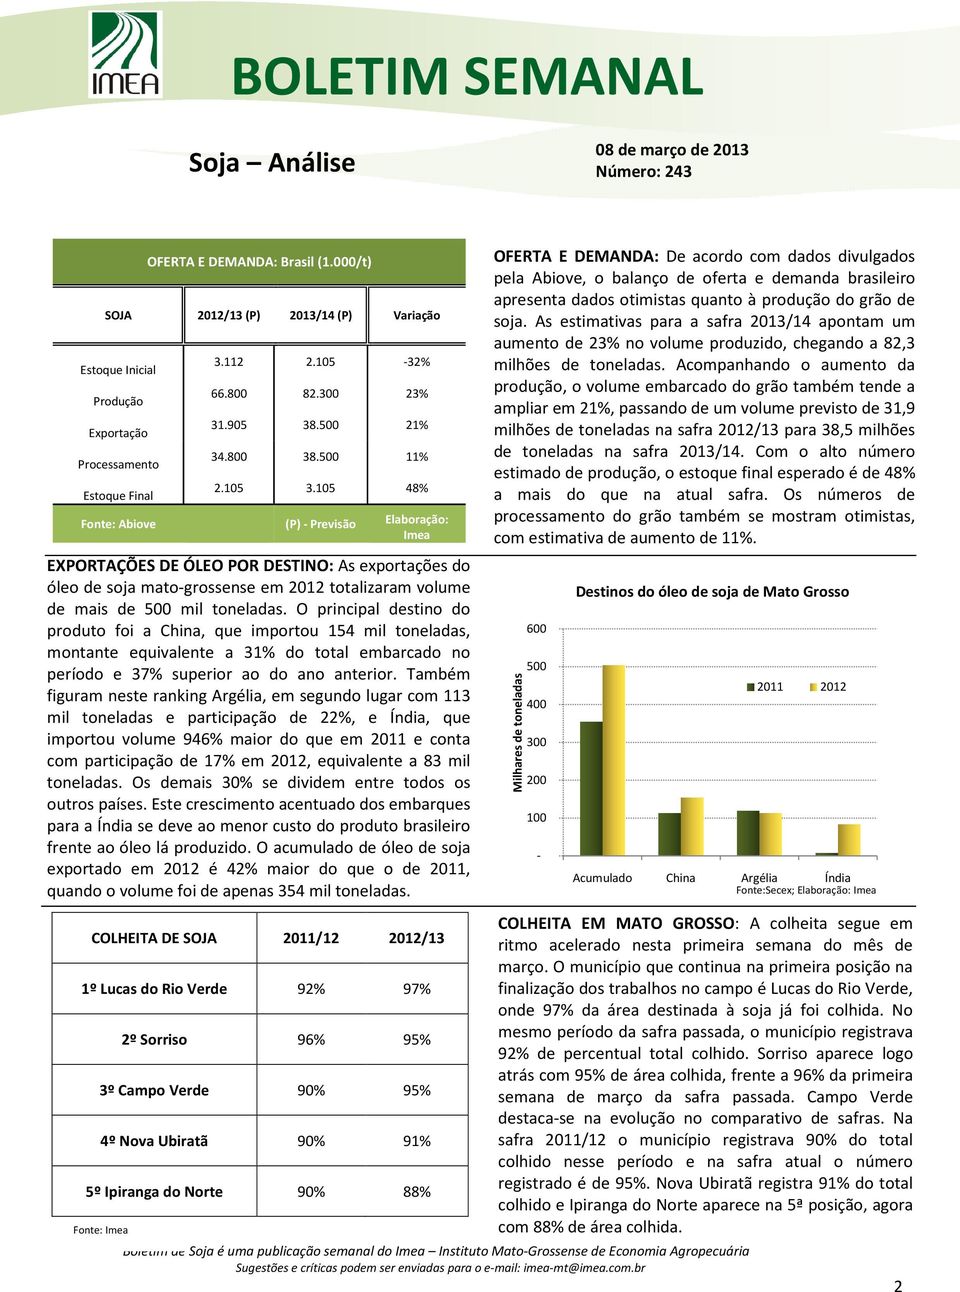 105 48% Fonte: Abiove (P) - Previsão Elaboração: Imea EXPORTAÇÕES DE ÓLEO POR DESTINO: As exportações do óleo de soja mato-grossense em 2012 totalizaram volume de mais de 500 mil toneladas.